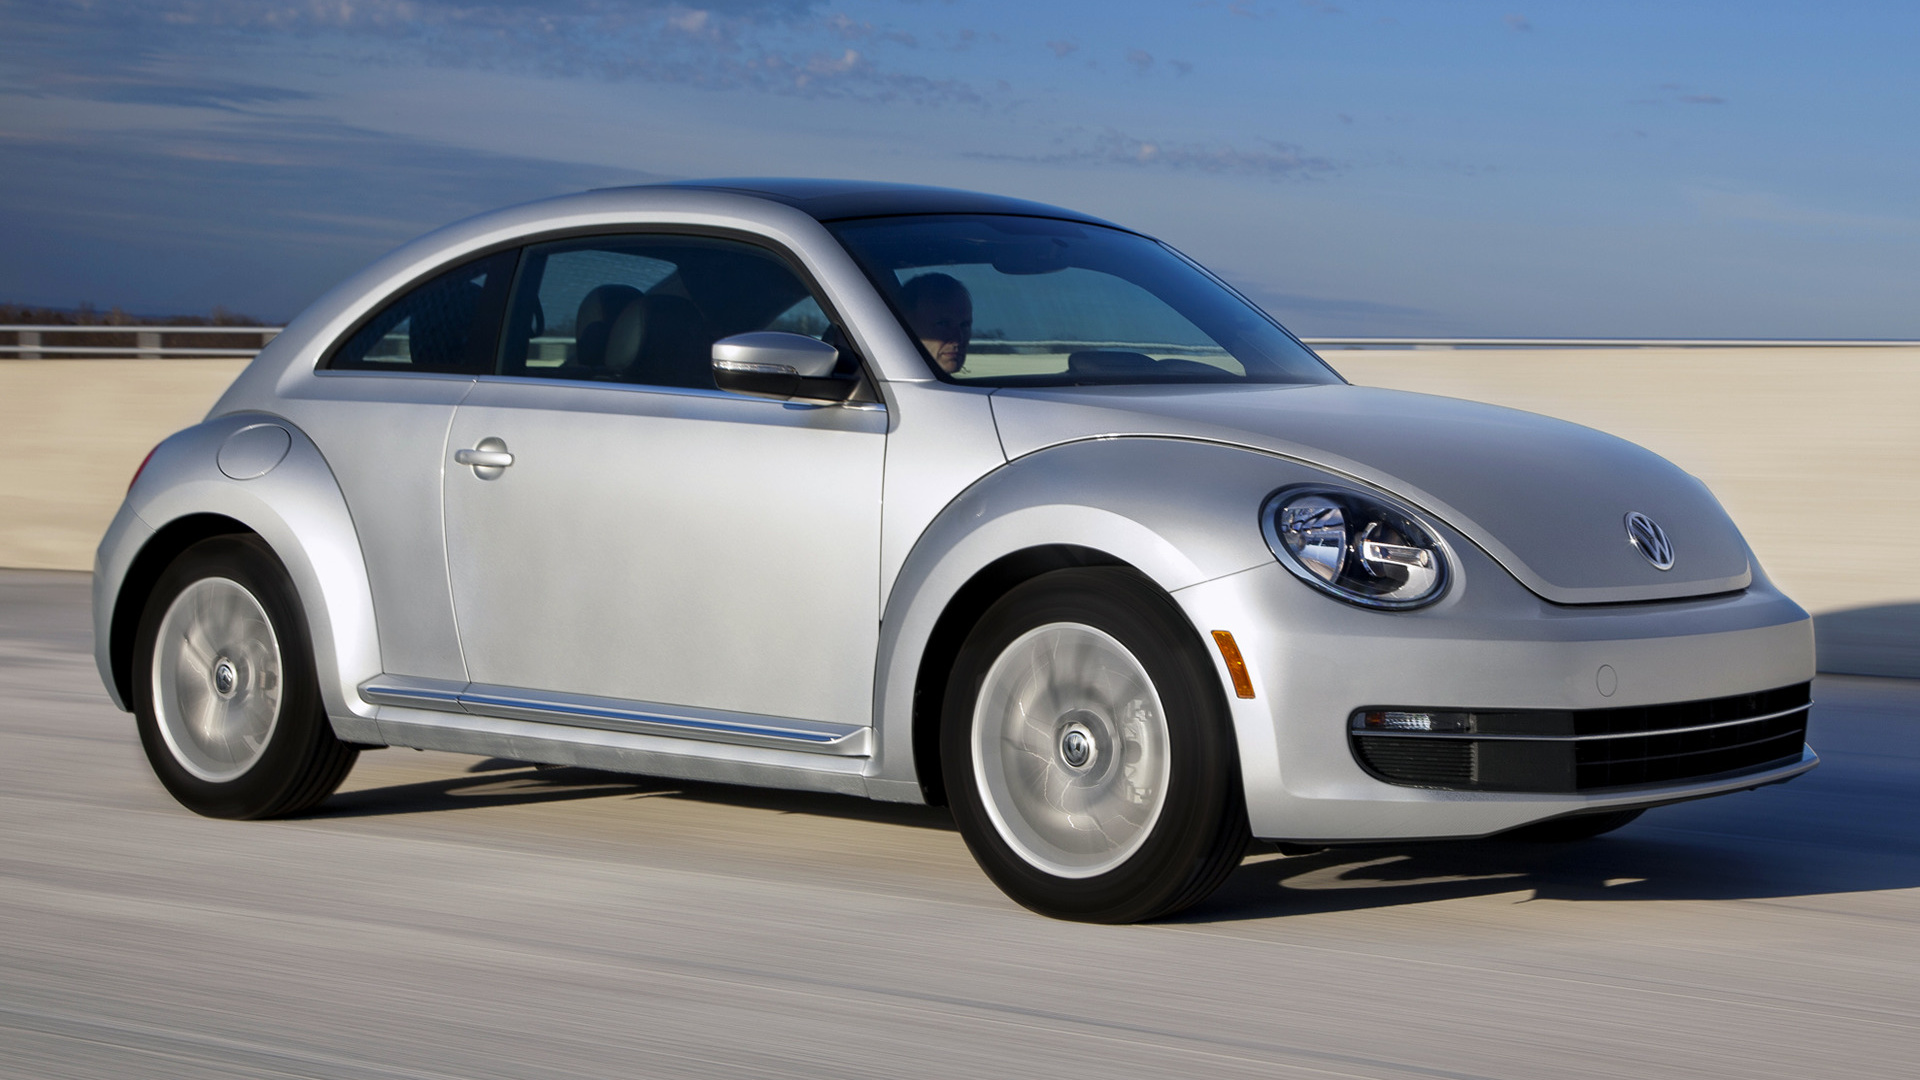 2012 Volkswagen Beetle Wallpapers